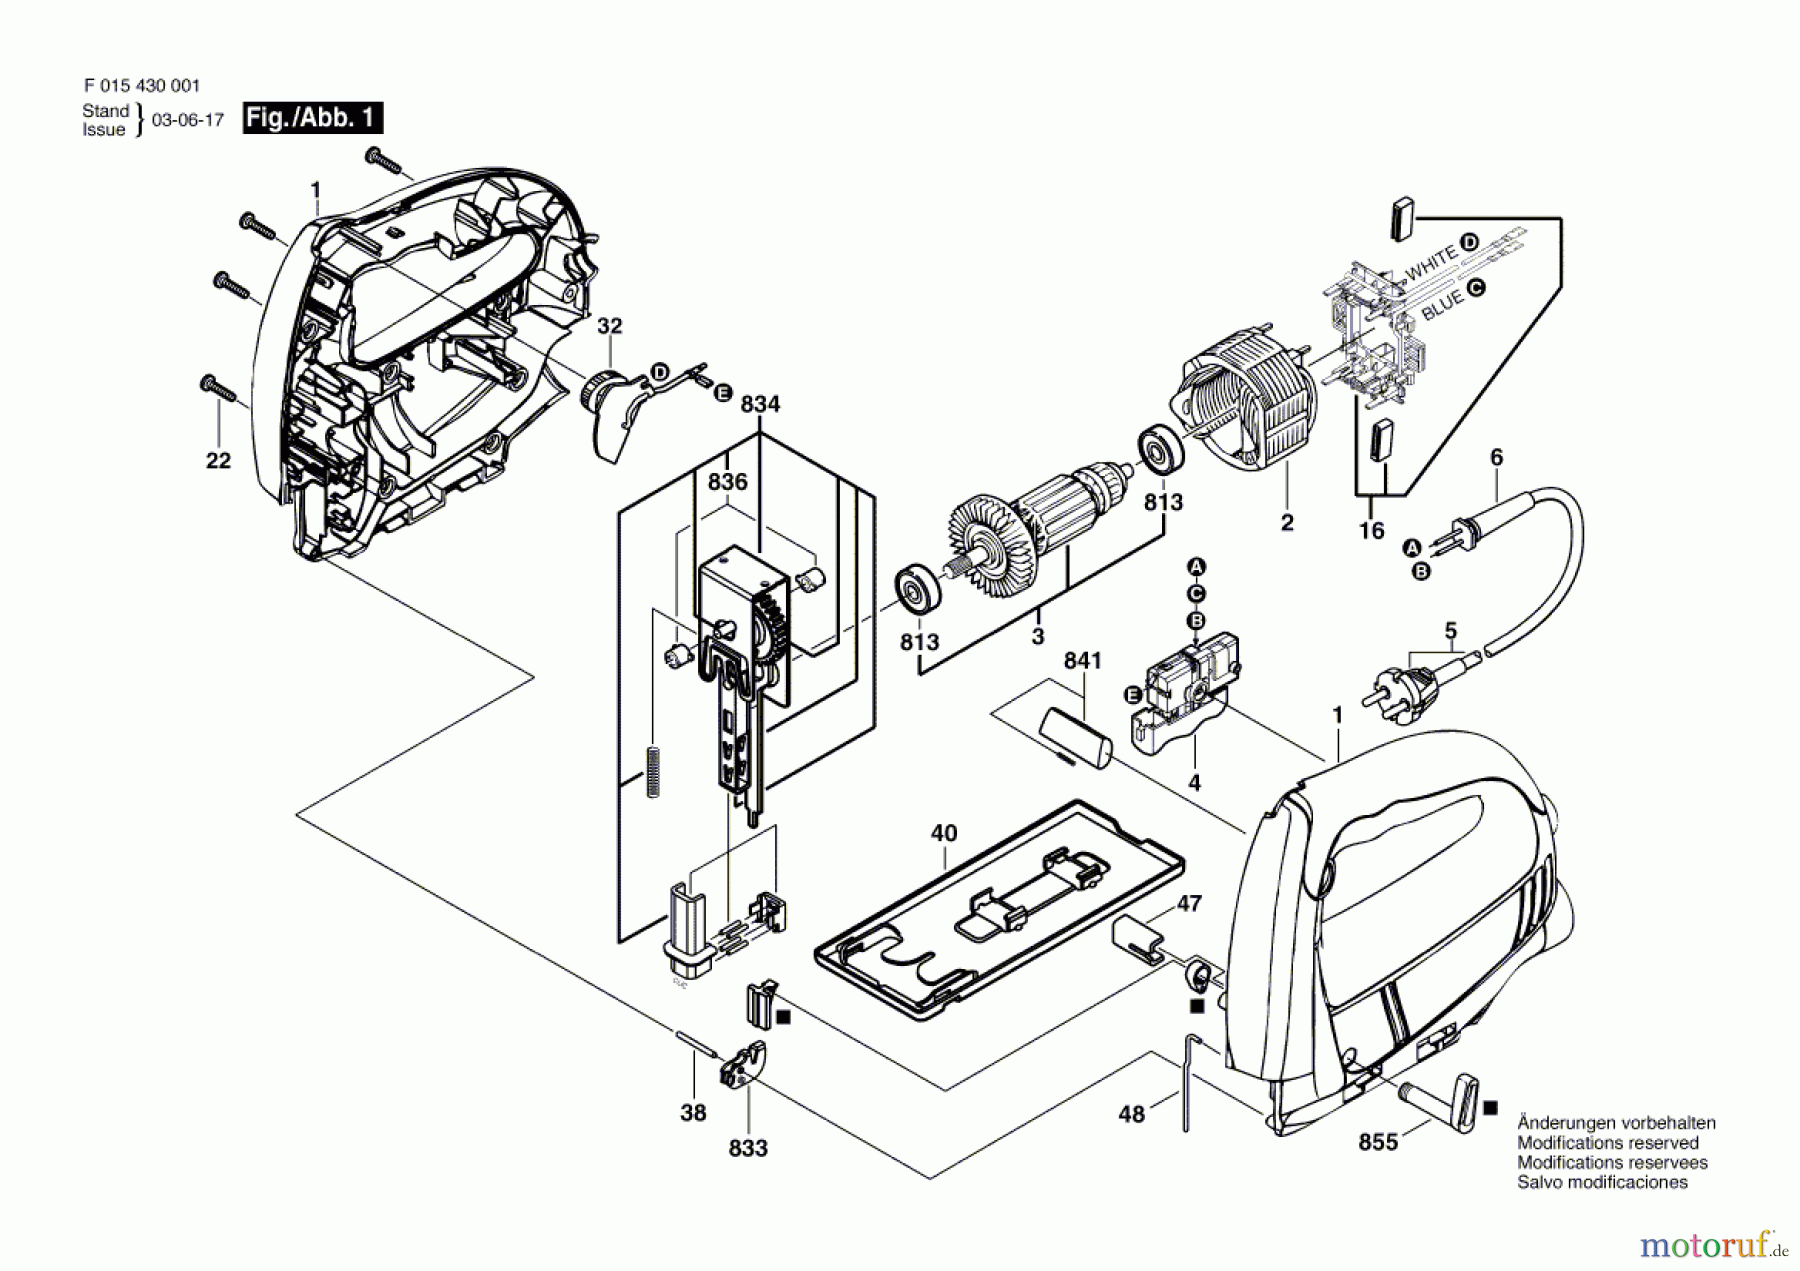  Bosch Werkzeug Stichsäge 4300 Seite 1